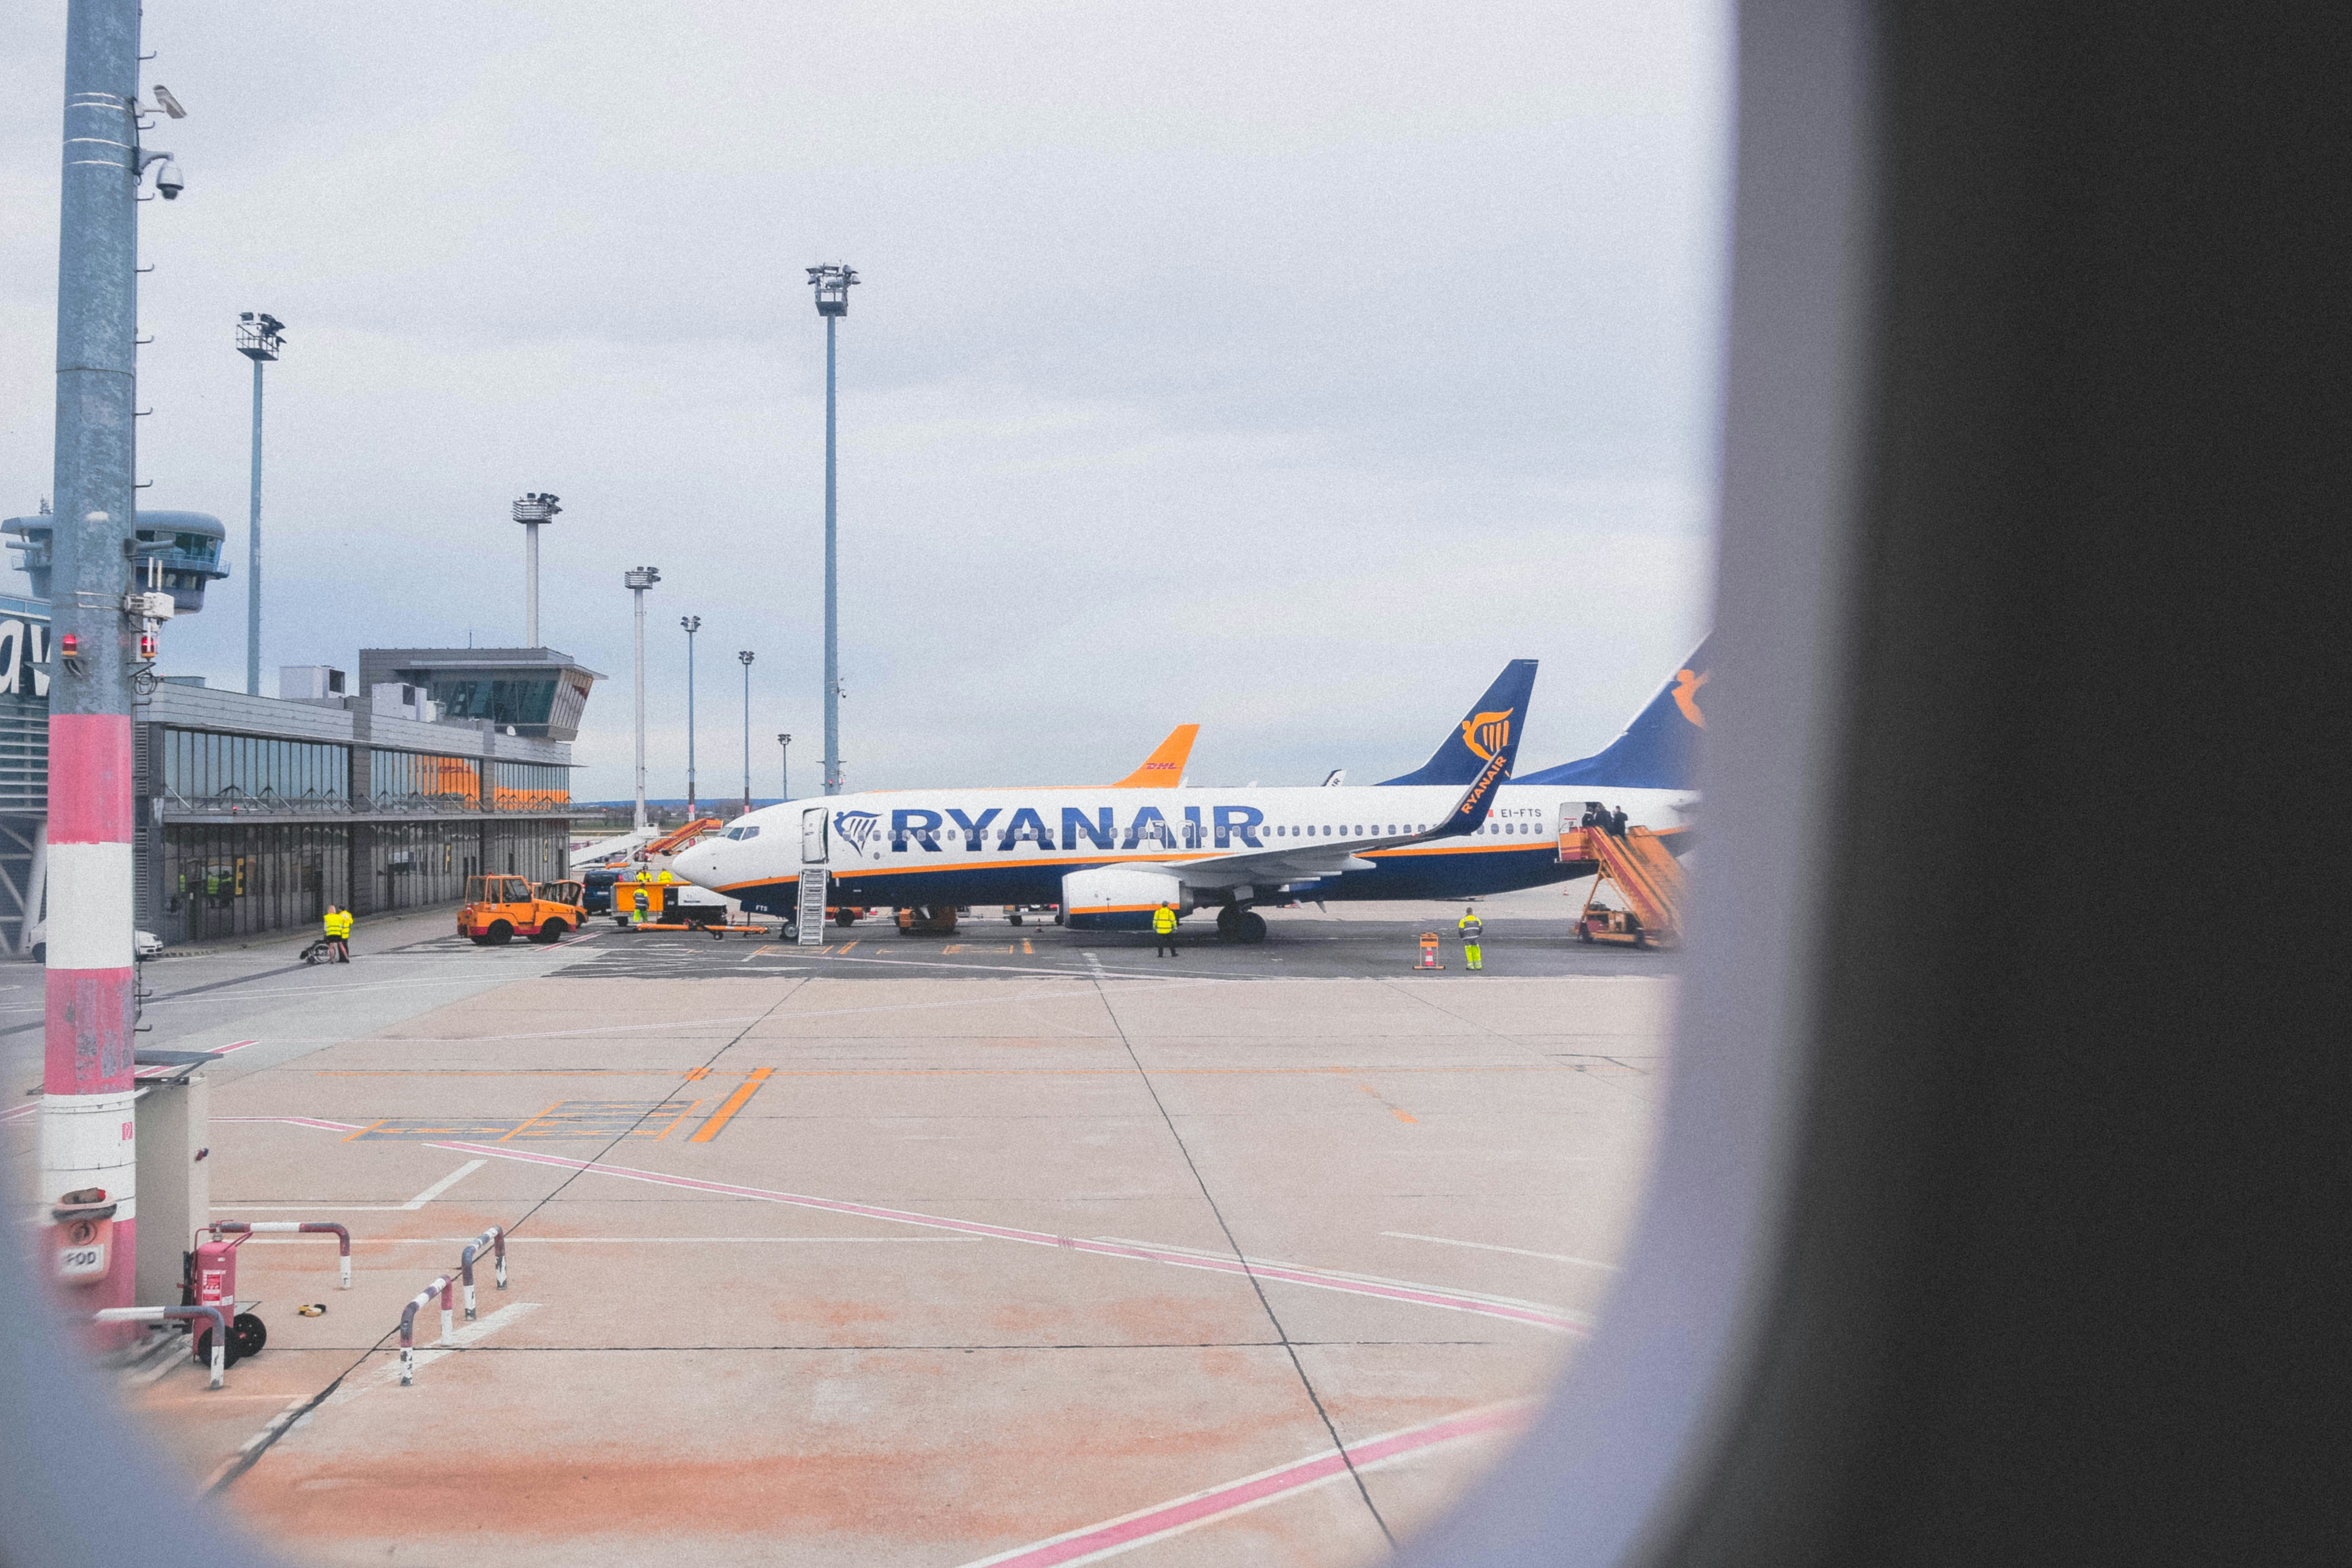 Αναταράξεις στα οικονομικά αποτελέσματα των αεροπορικών εταιρειών: Ryanair βλέπει απότομη πτώση των κερδών